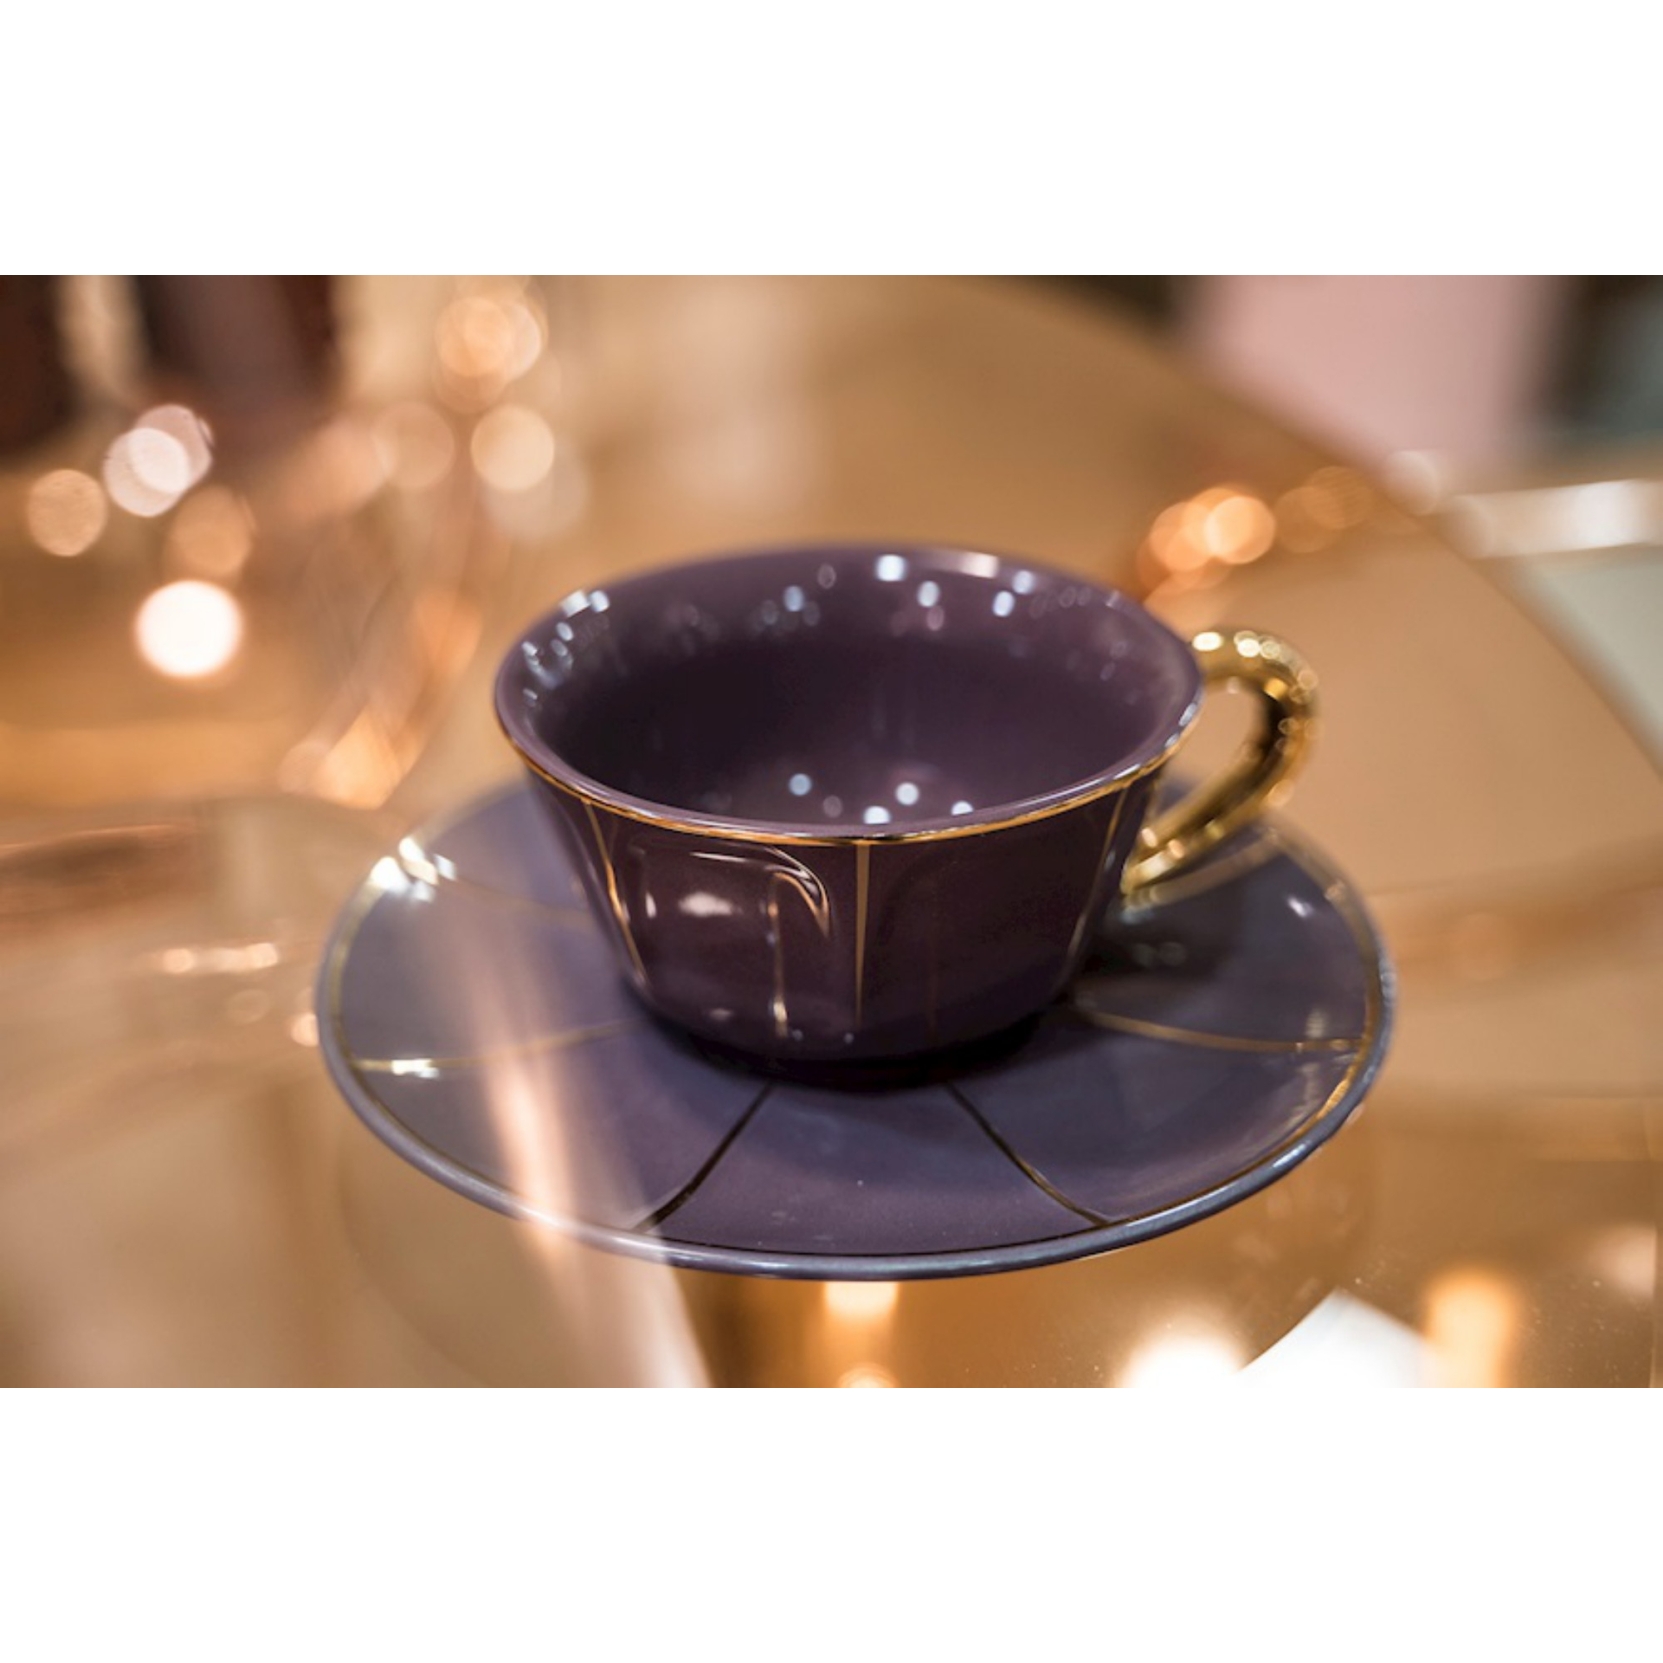 Immagini Stock - Quattro Semplici In Ceramica Caffè O Tè Tazze